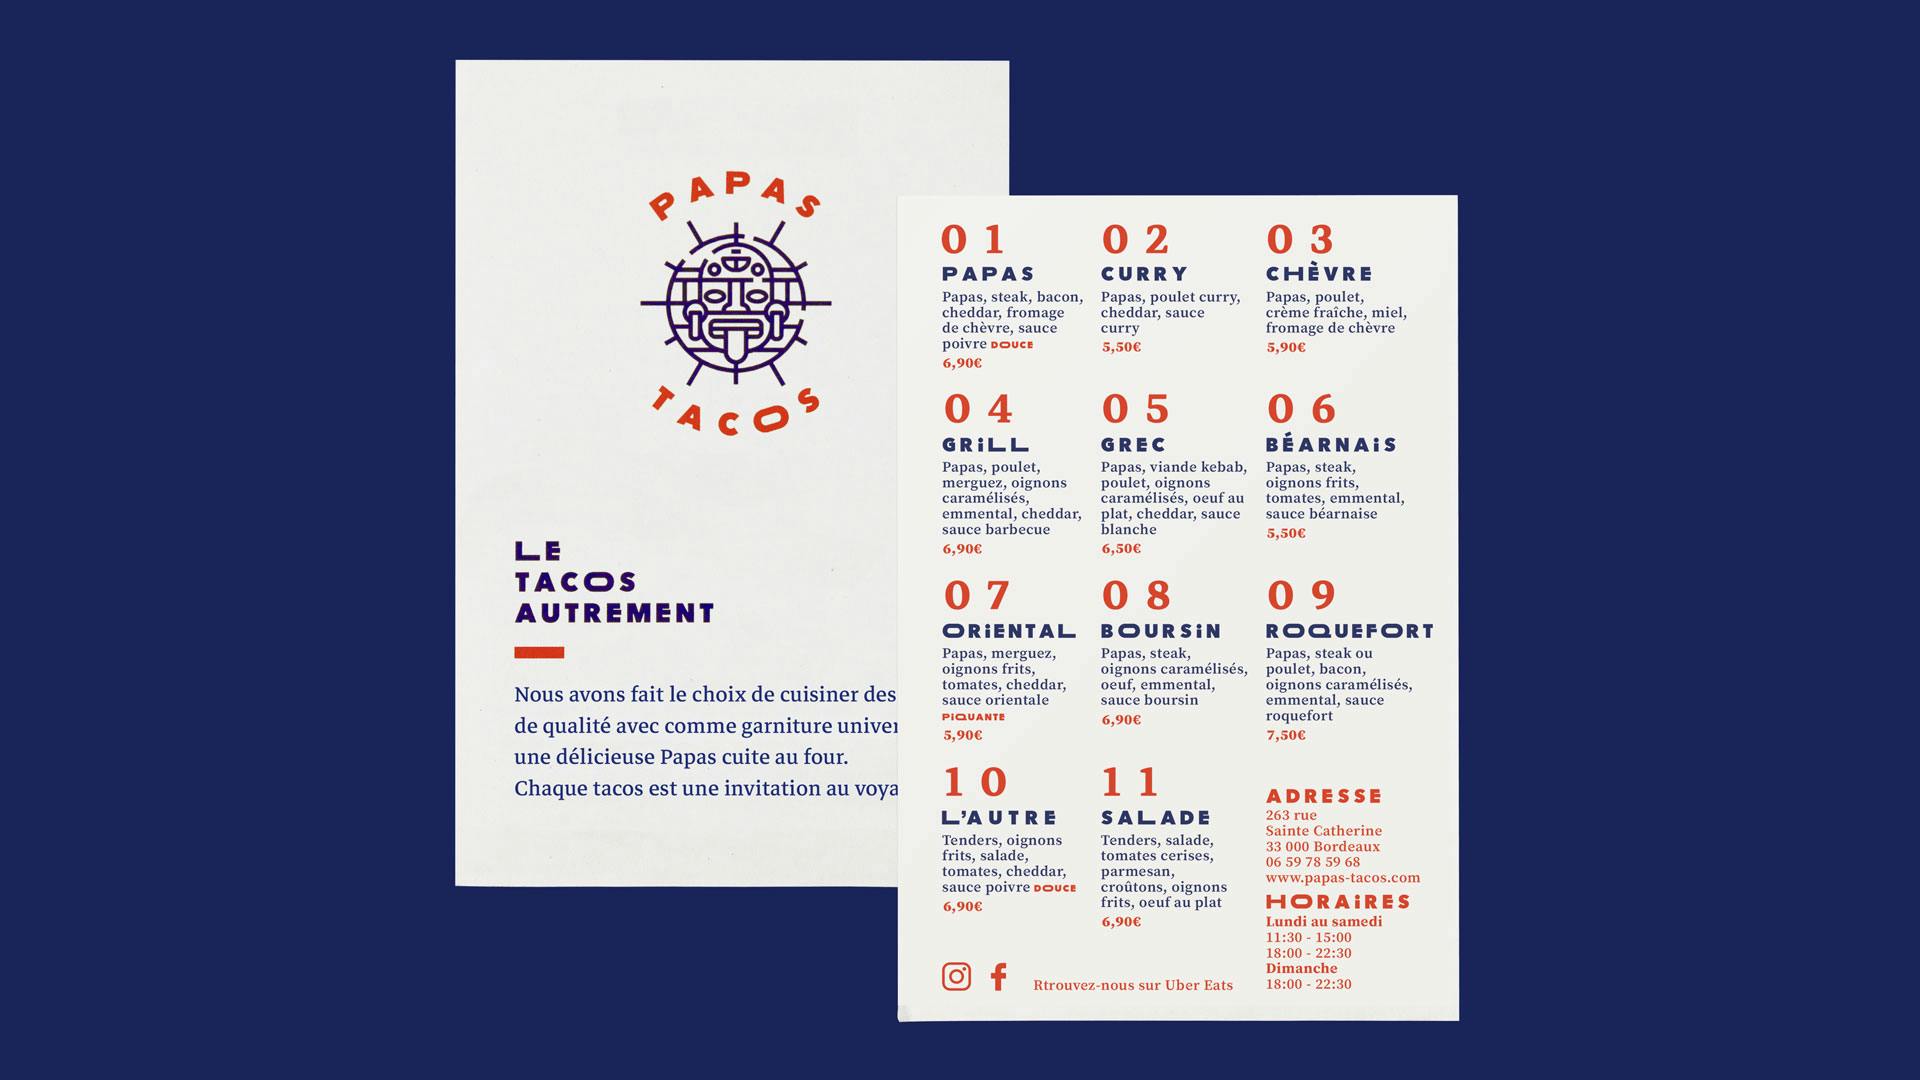 Papas tacos - restaurant - Bordeaux - identity - graphic - flyer - menu 